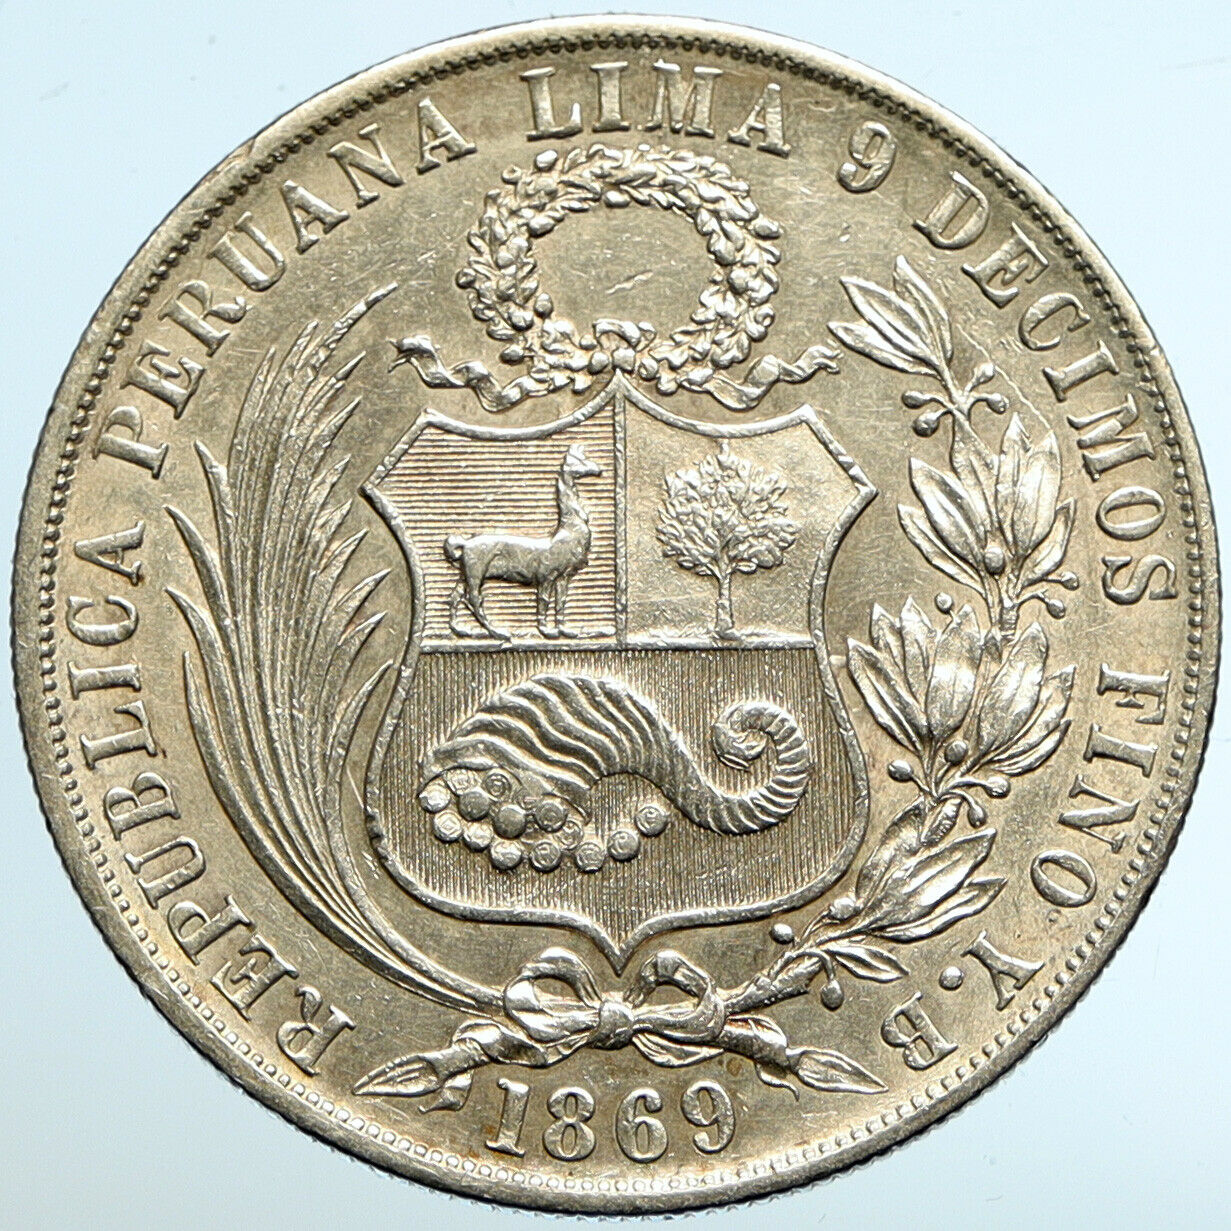 1869 PERU South America LIBERTY Antique Genuine Silver SOL Peruvian Coin i102615